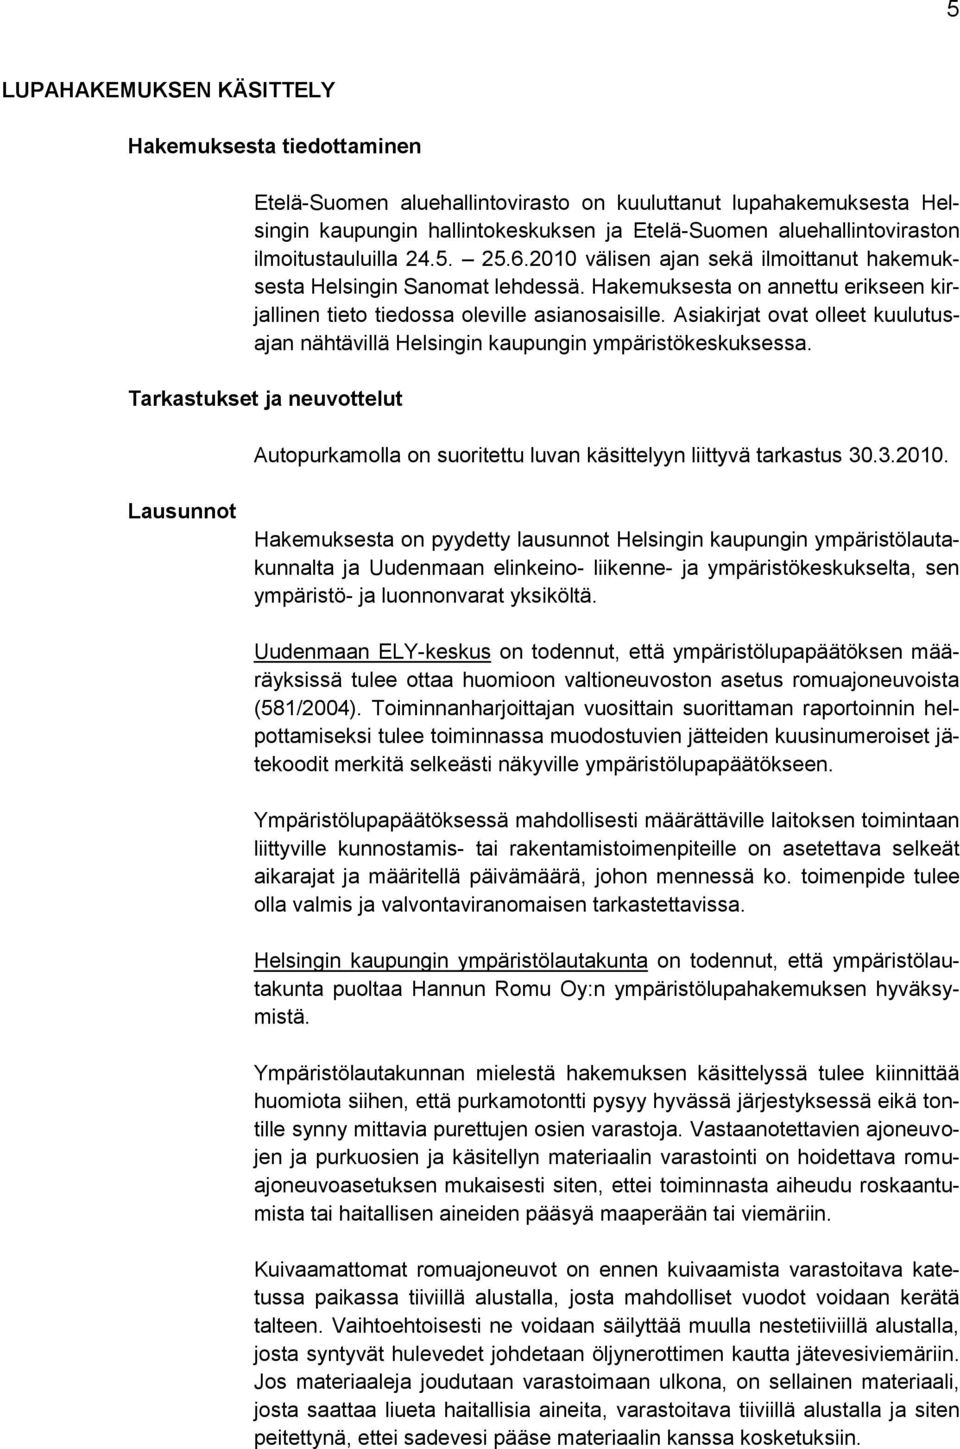 Asiakirjat ovat olleet kuulutusajan nähtävillä Helsingin kaupungin ympäristökeskuksessa. Tarkastukset ja neuvottelut Autopurkamolla on suoritettu luvan käsittelyyn liittyvä tarkastus 30.3.2010.